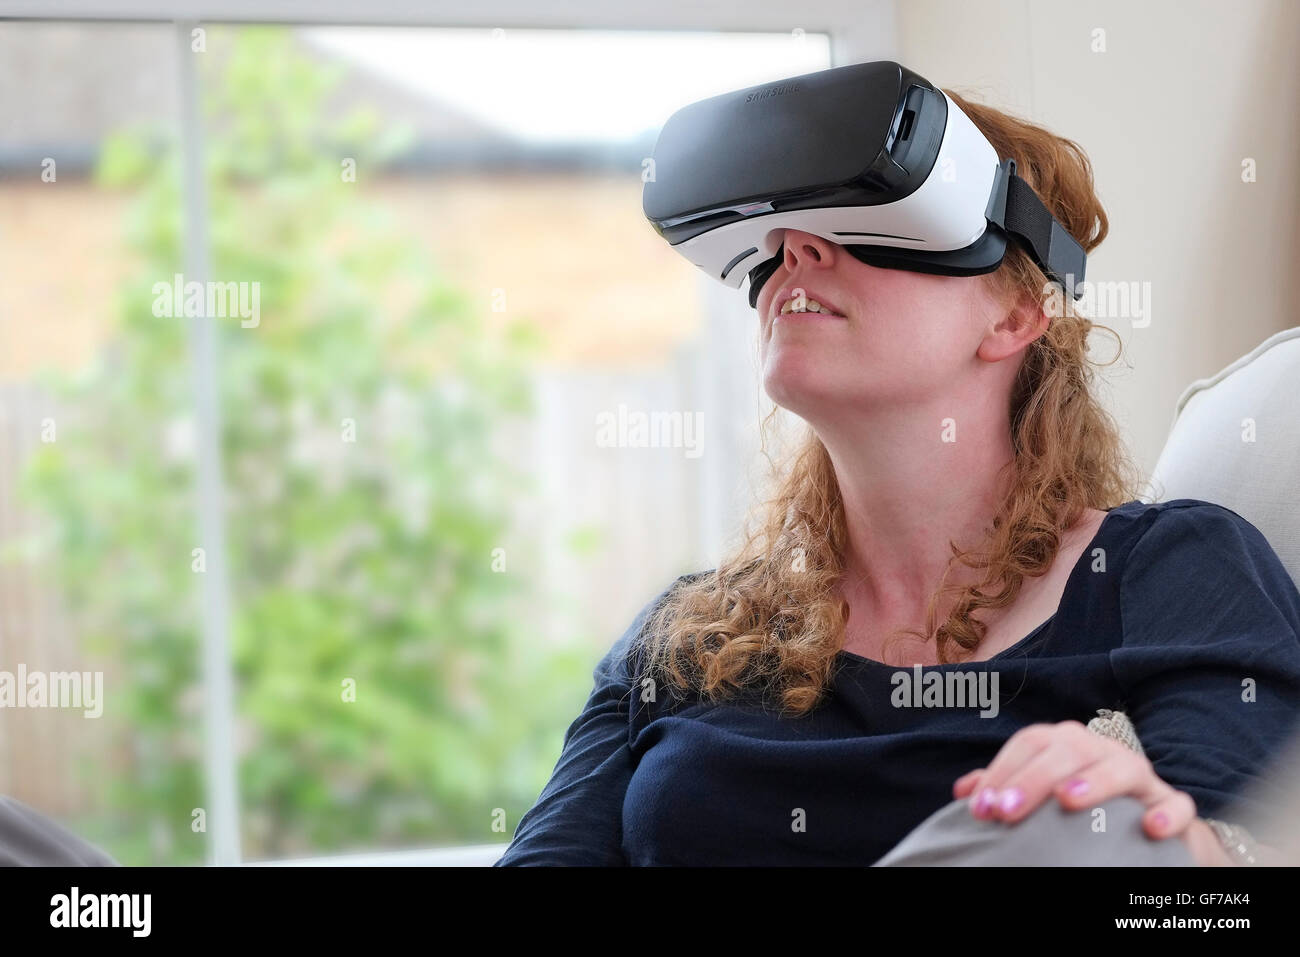 Casco de realidad virtual usado por persona femenina Foto de stock